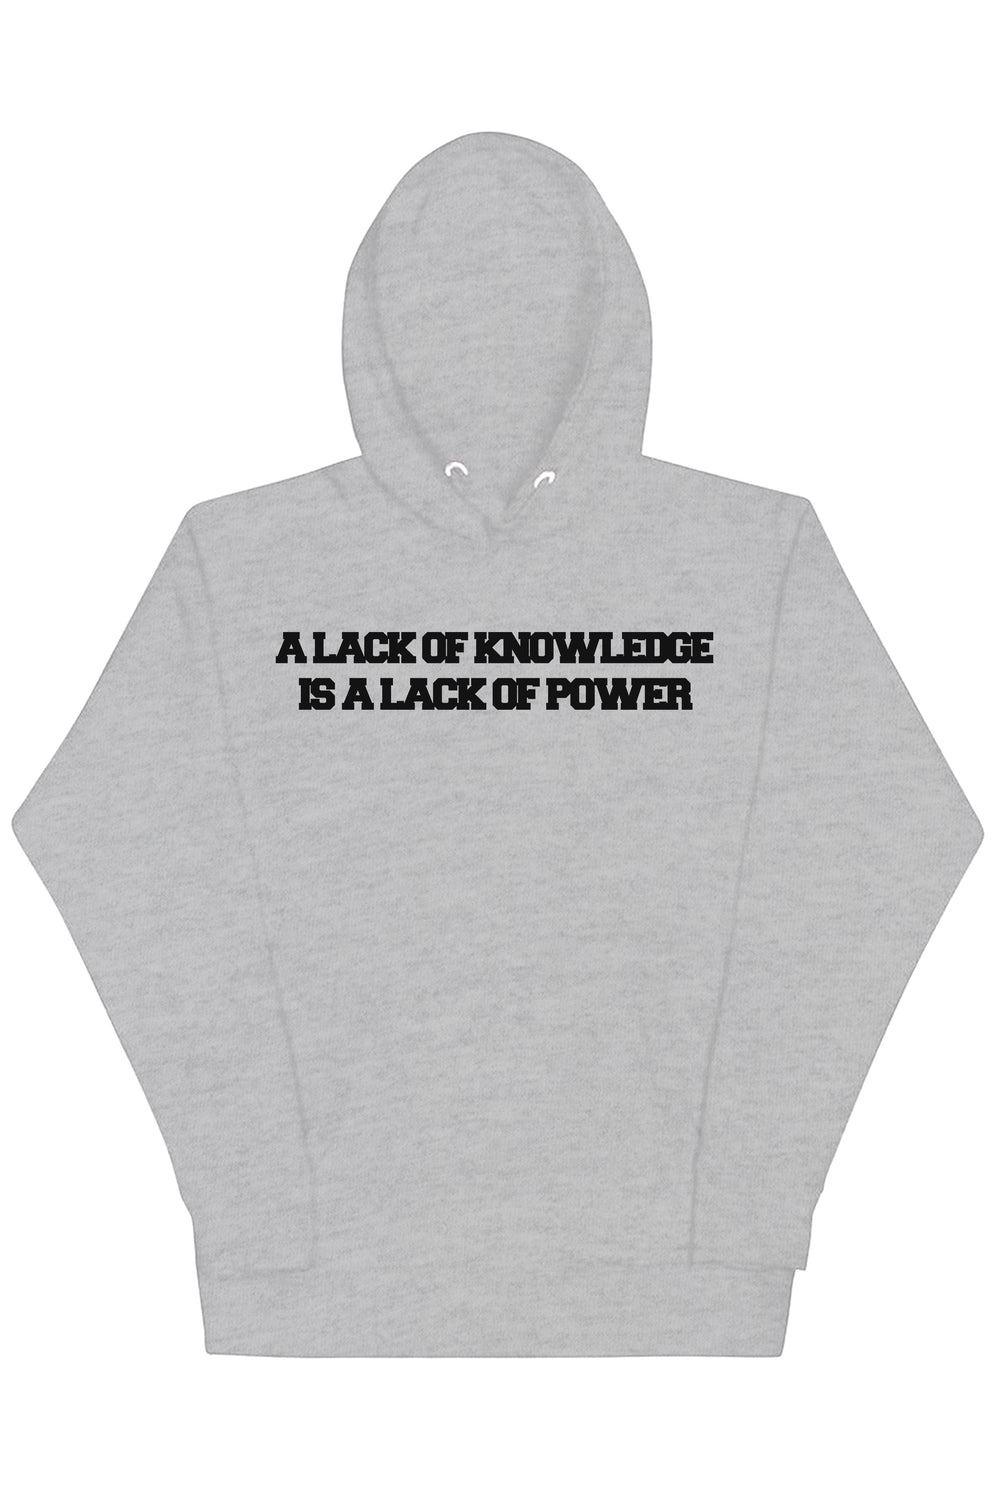 Knowledge & Power Hoodie (Black Logo) - Zamage